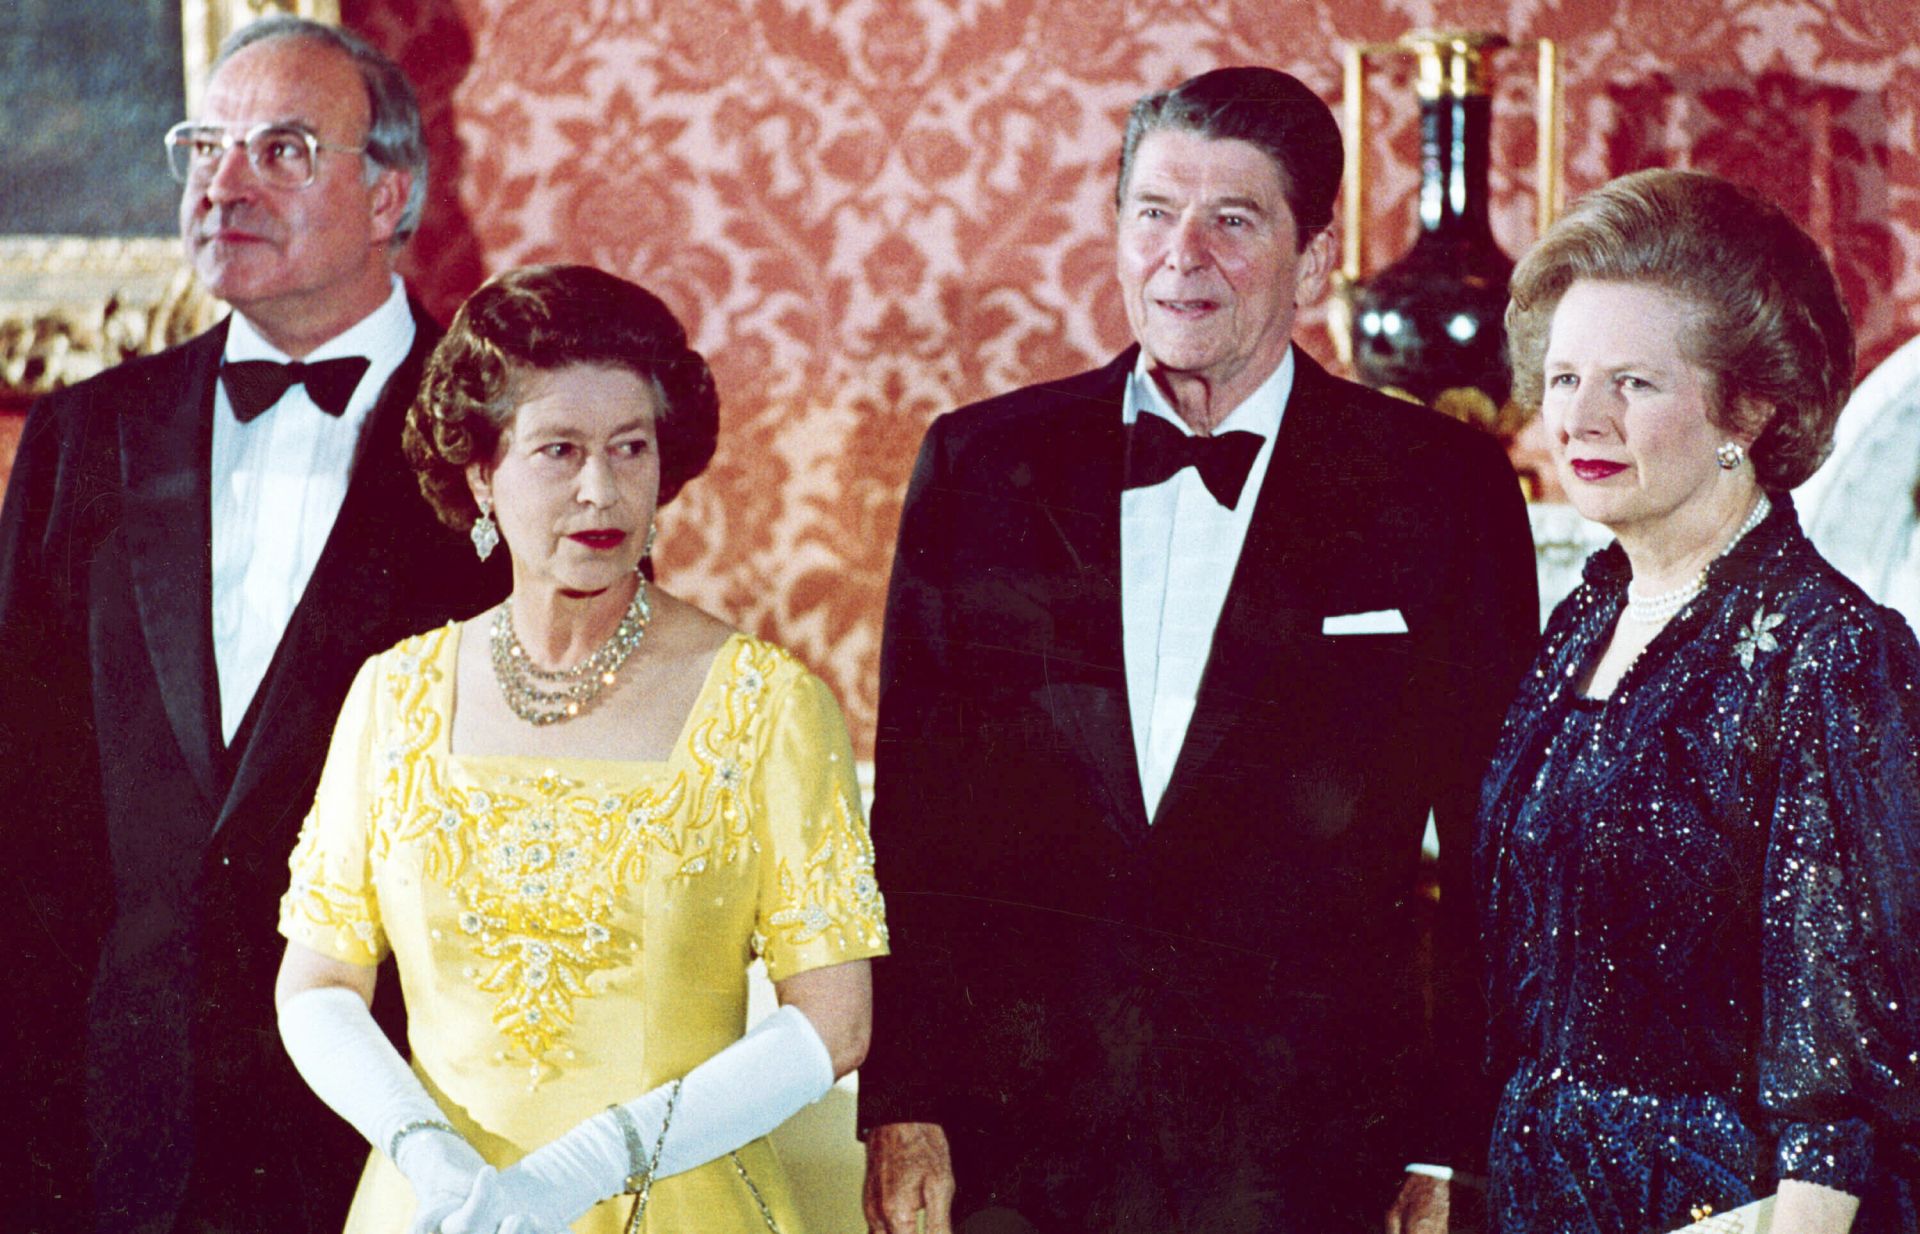 Май 1977 г.: Президентът Джими Картър, кралица Елизабет II, Валери Жискар д'Естен Май 1977 г.: Президентът Джими Картър, кралица Елизабет II, Валери Жискар д'Естен